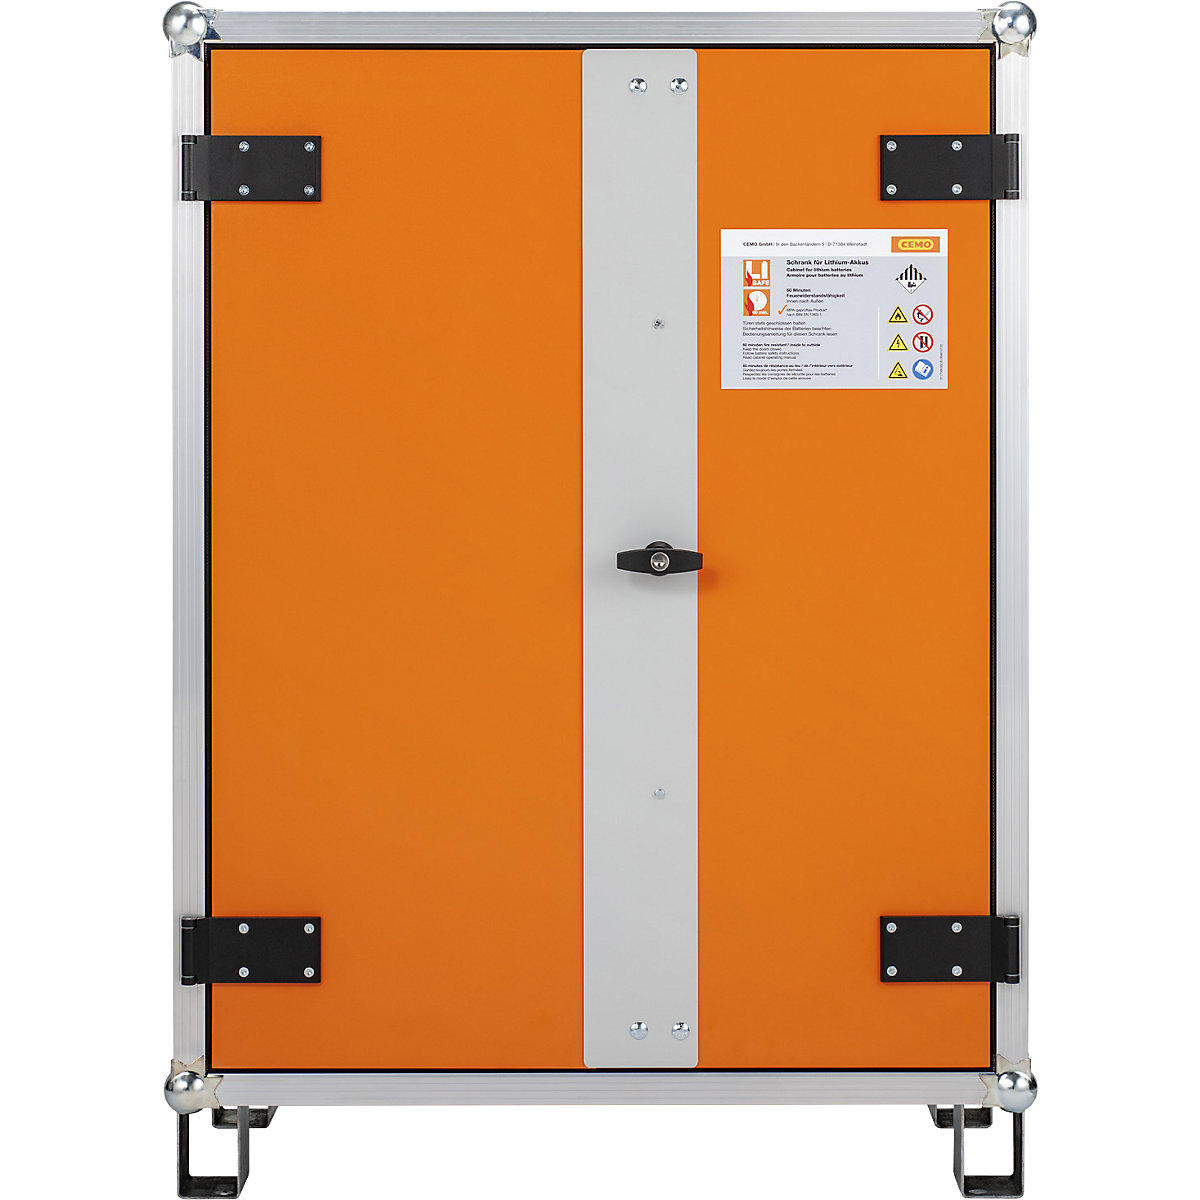 Biztonsági akkumulátortöltő szekrény tűzjelző berendezéshez - CEMO